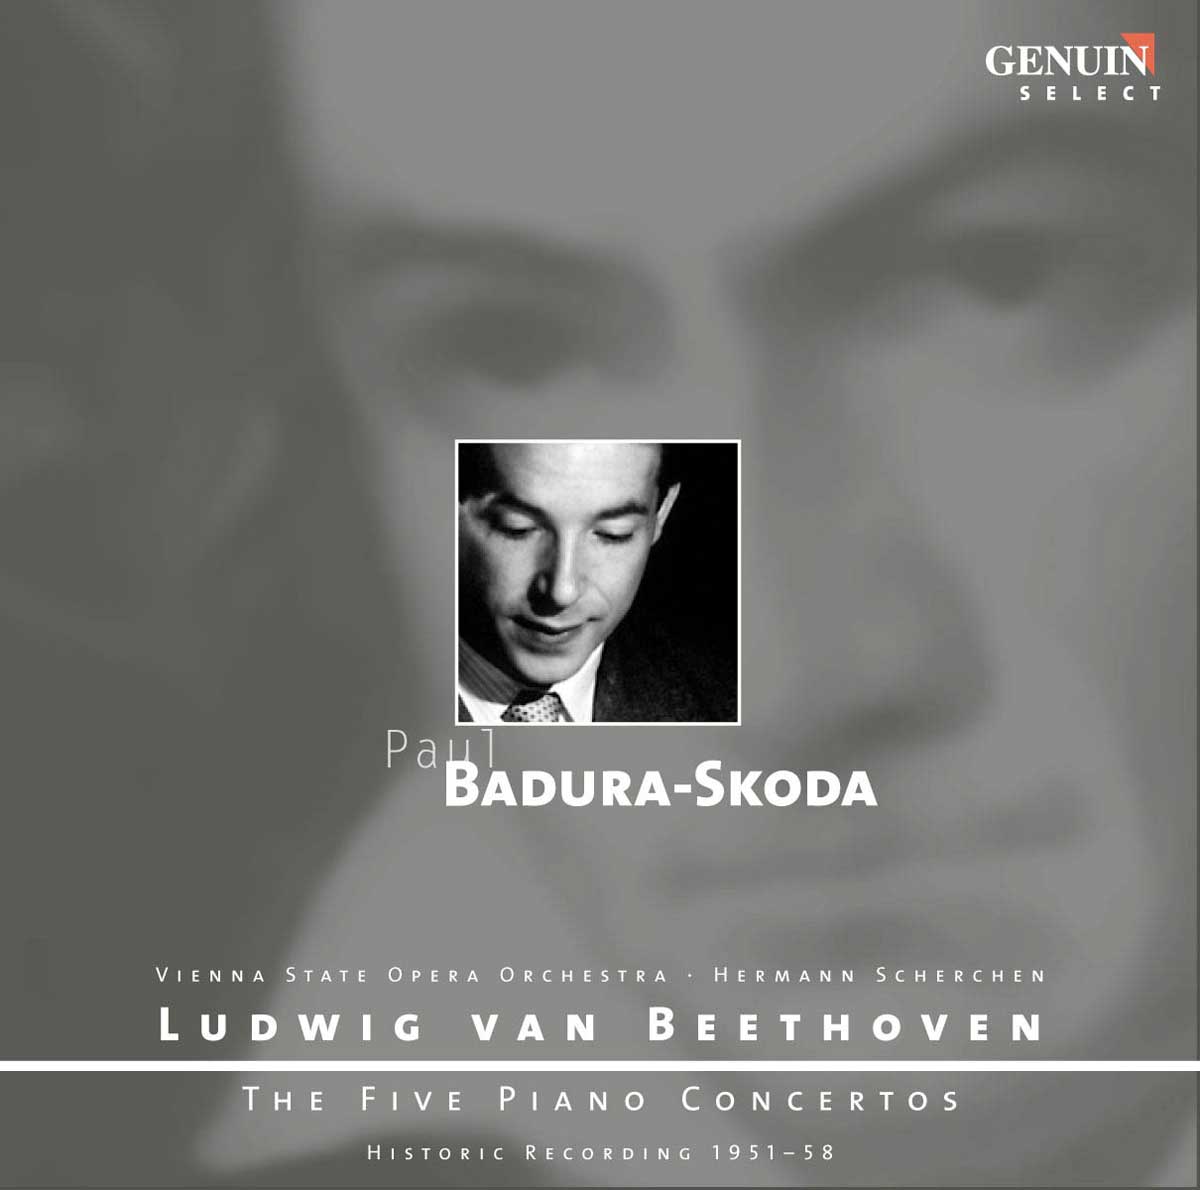 CD album cover 'Ludwig van Beethoven: Die fünf Klavierkonzerte' (GEN 87102) with Paul Badura-Skoda ...